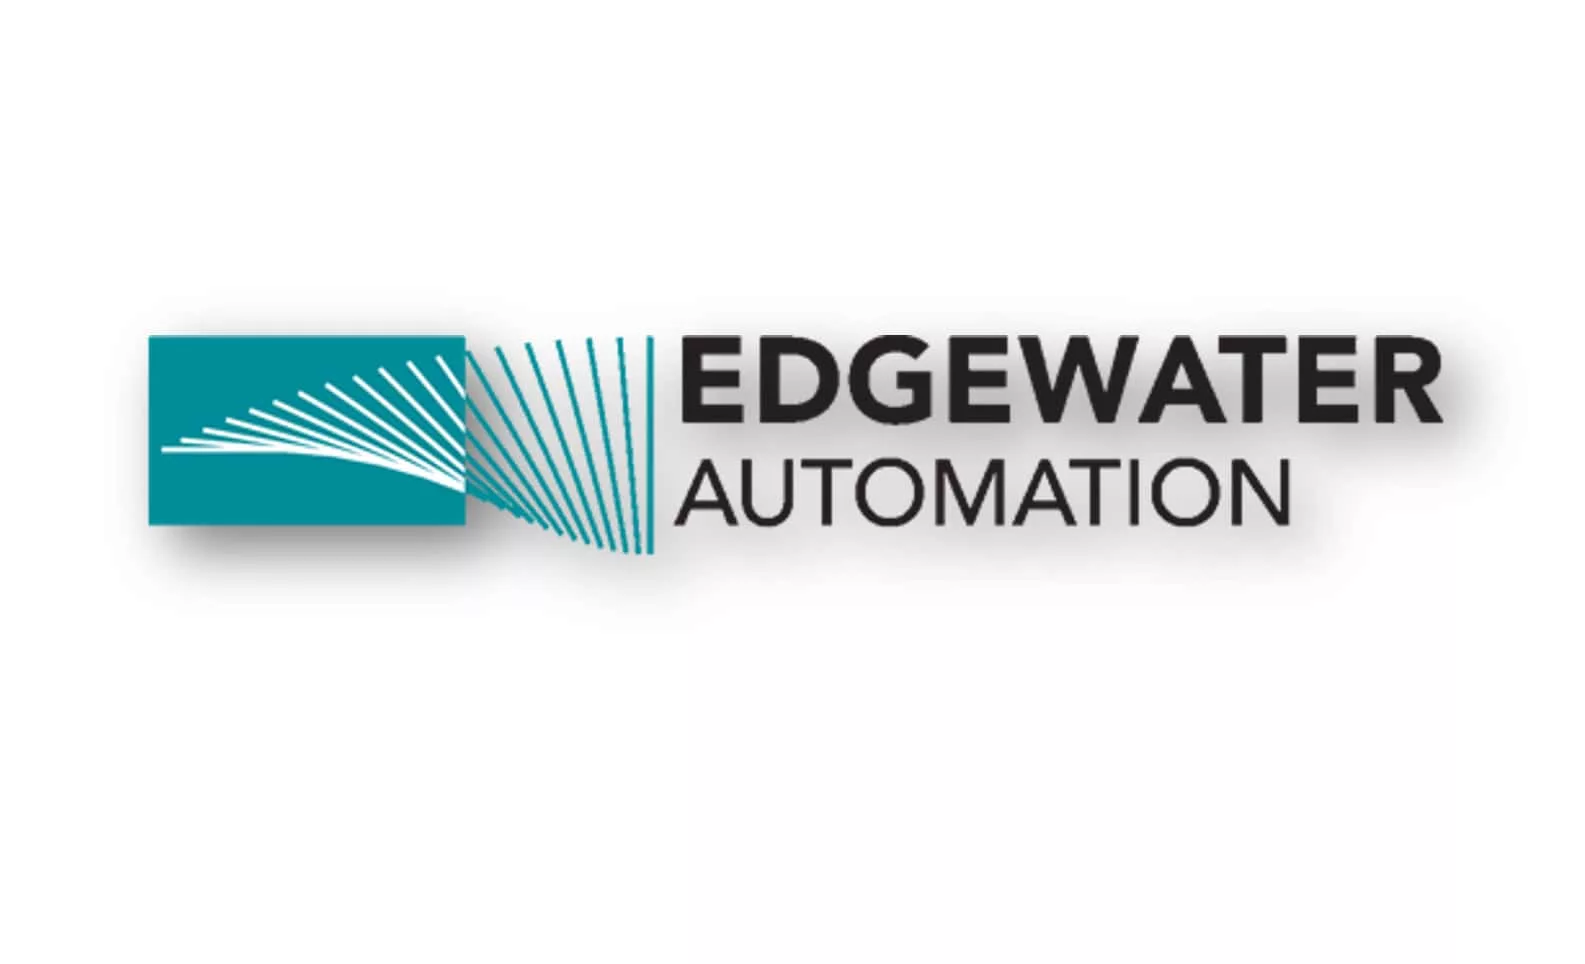 EdgewaterAutomationLogoLong.webp